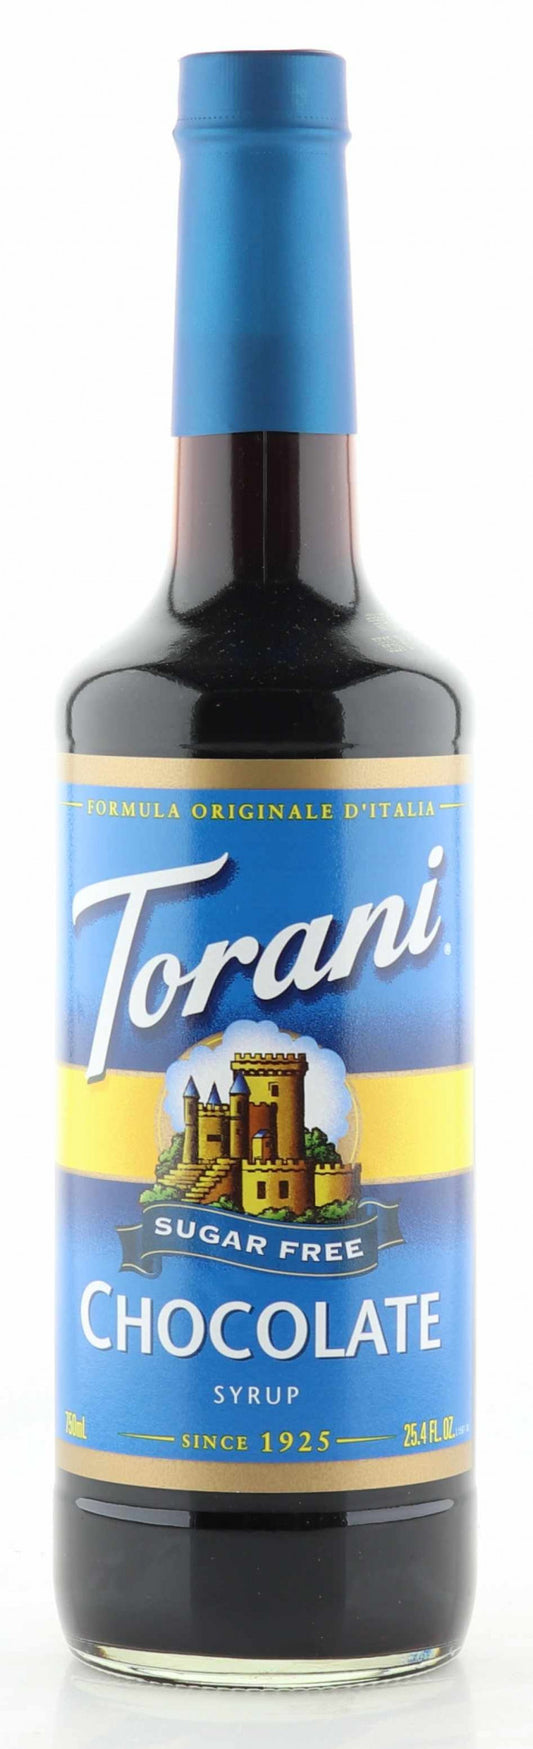 Torani Sirup zuckerfrei Schokoladen Geschmack